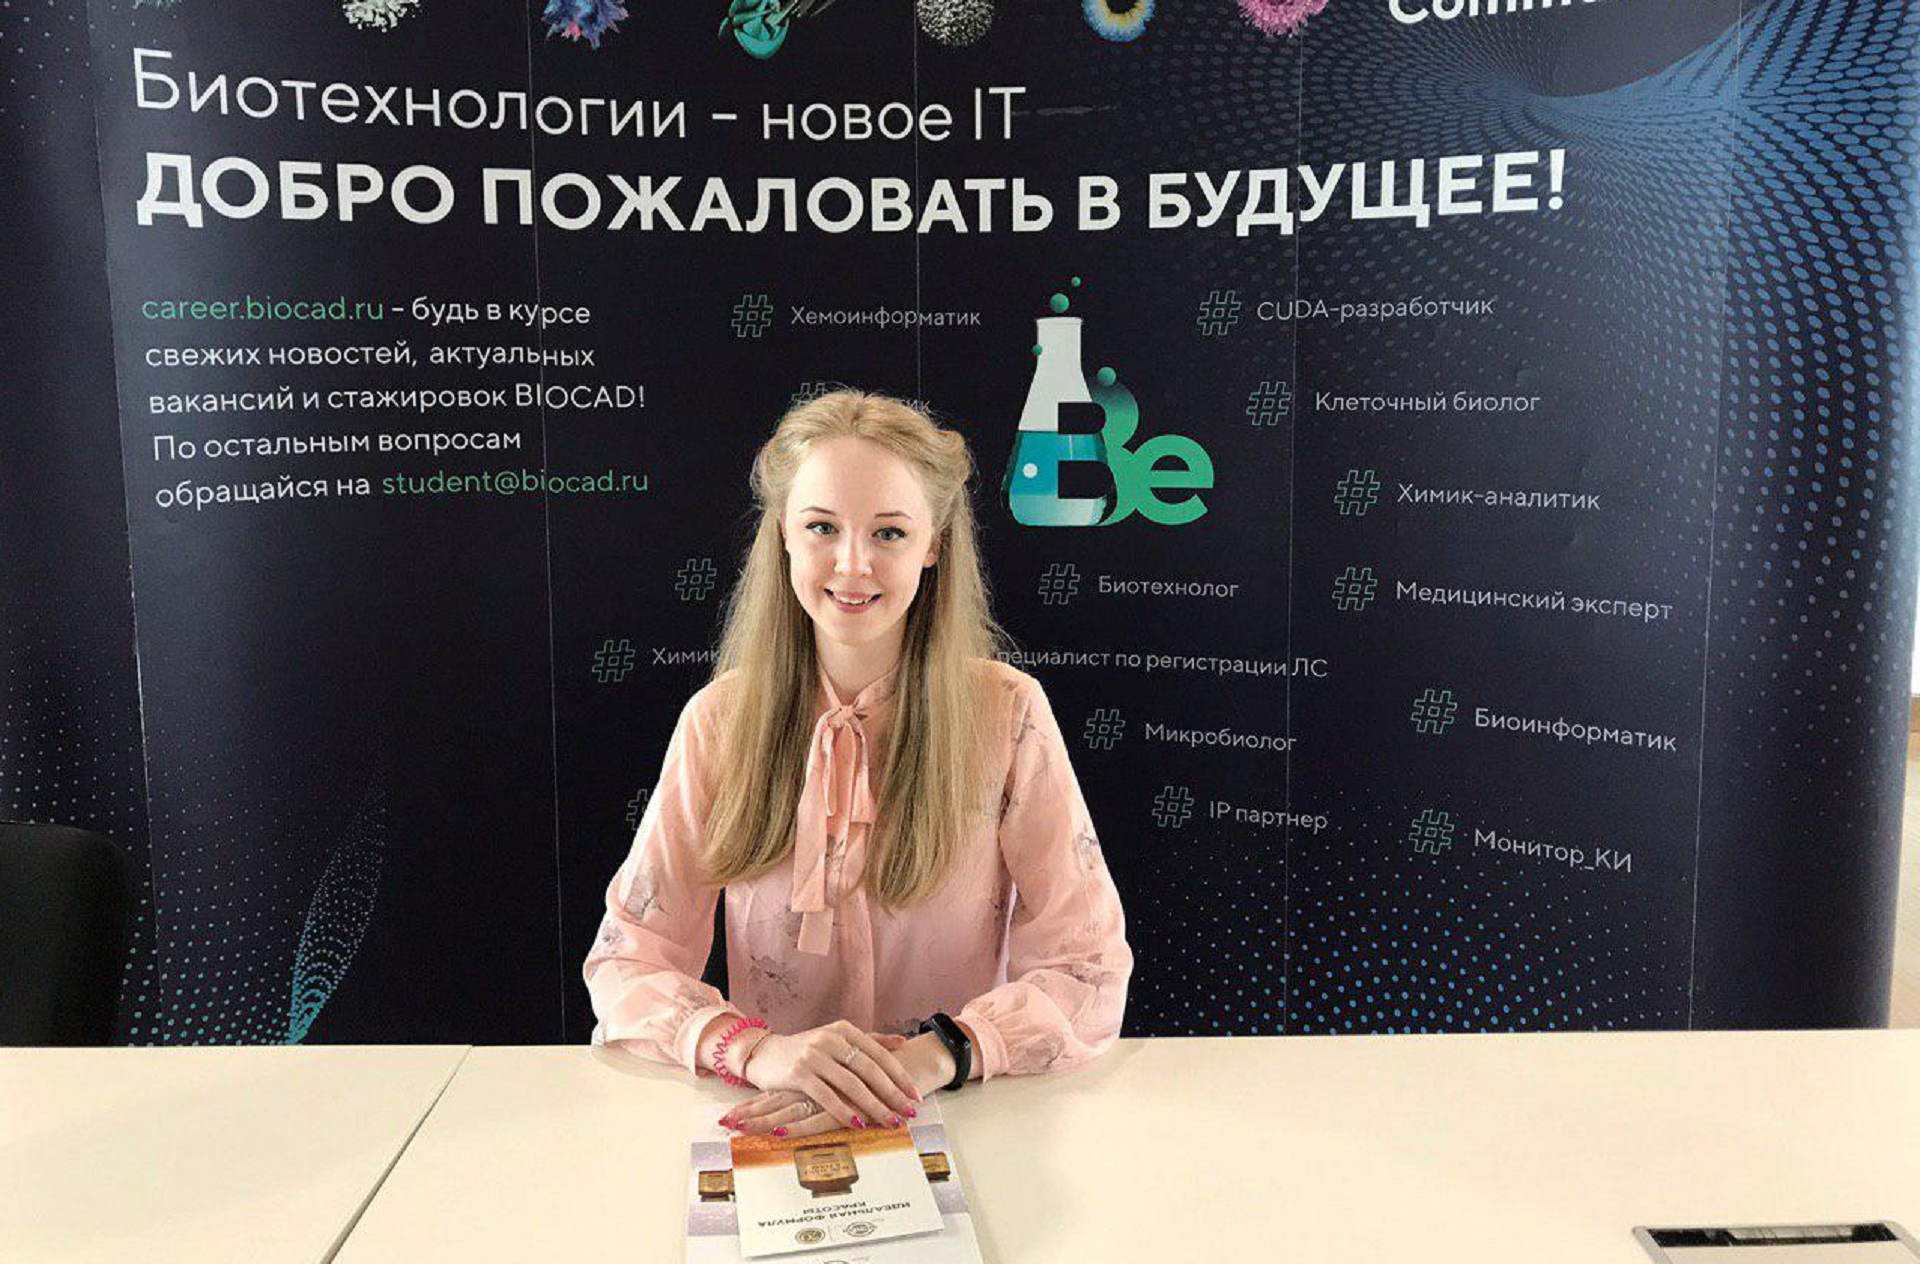 Студентка ВятГУ Дарья Якушкова вошла в топ-15 участников престижной образовательной программы в области фармацевтики и биотехнологий «Pharma’s cool»